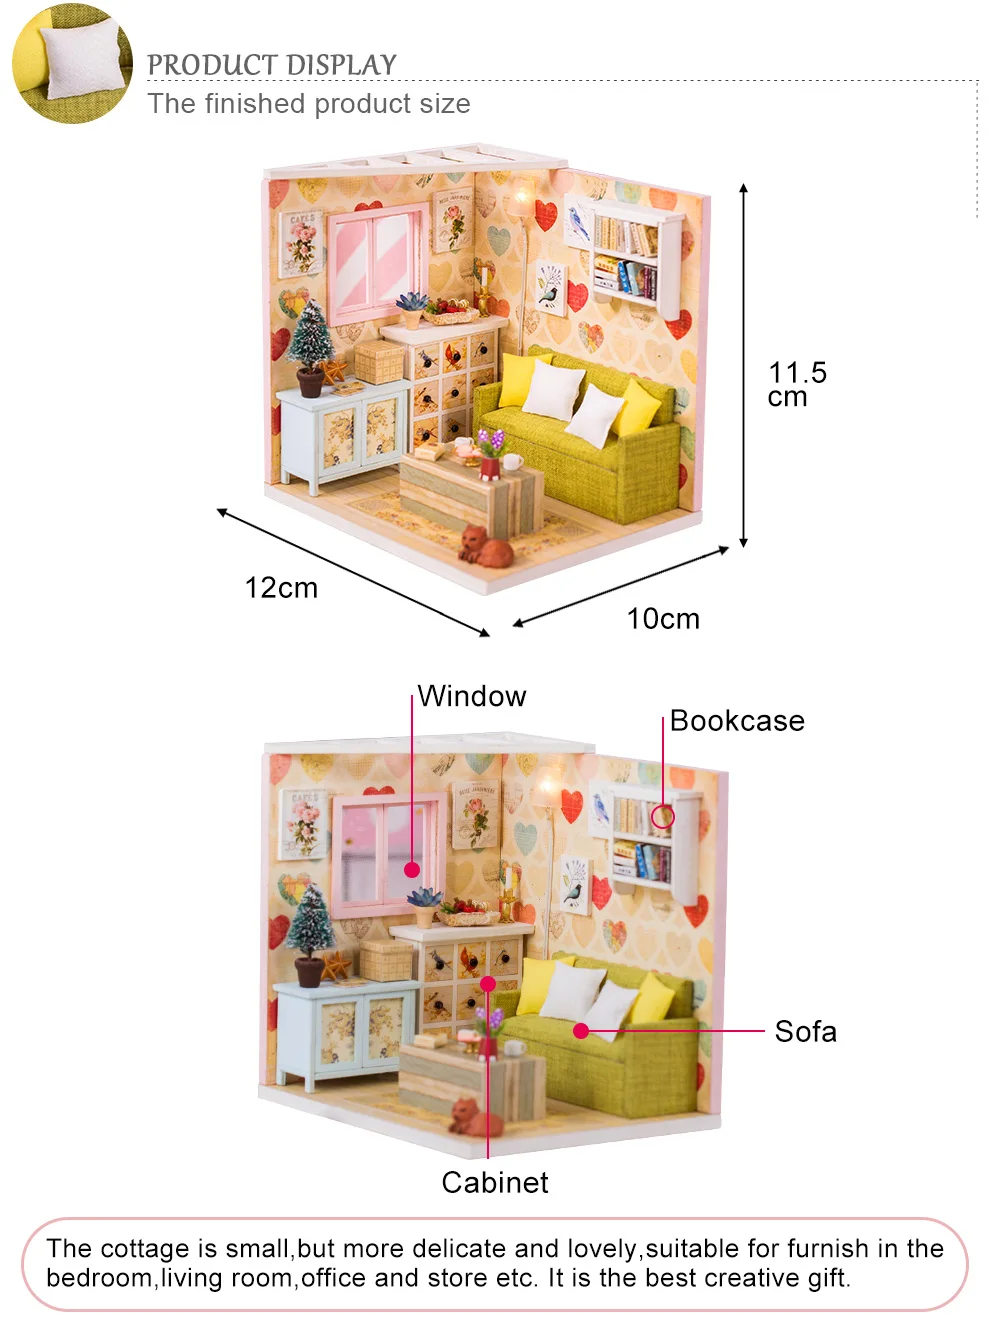 Кукольный домик Cutebee миниатюрная мебель кукольный домик DIY Миниатюрные домики комнаты Каса игрушки для детей DIY кукольный домик M10F